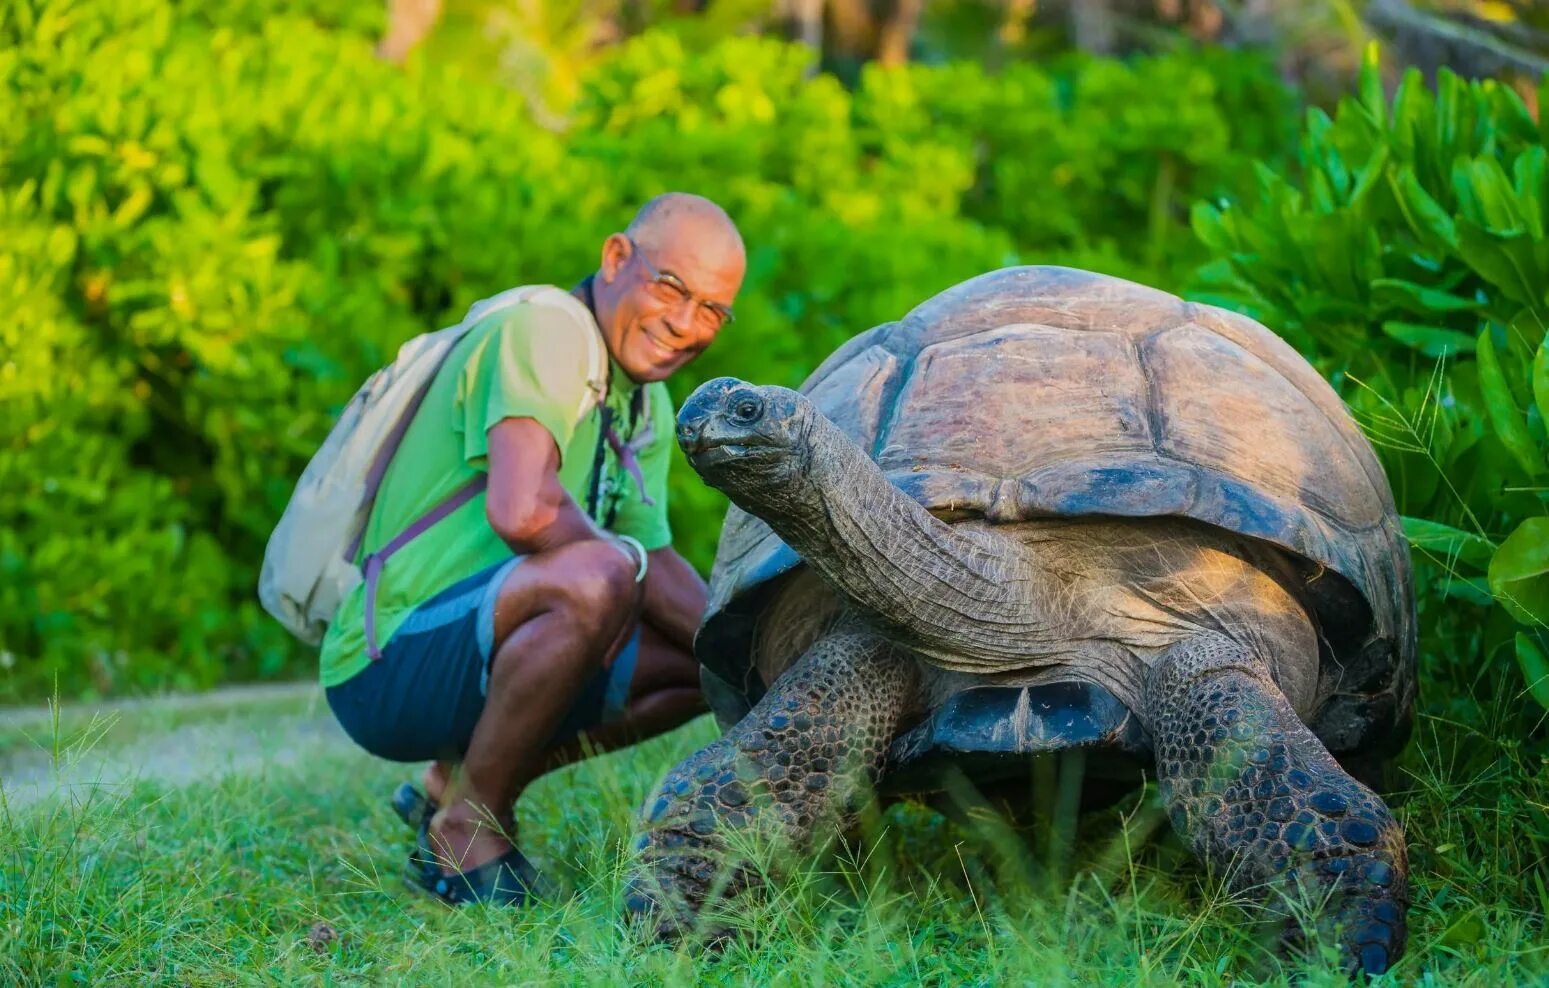 Джонатан Галапагосская черепаха. Гигантская черепаха Альдабра. Исполинская сейшельская черепаха. Черепахи живут 300